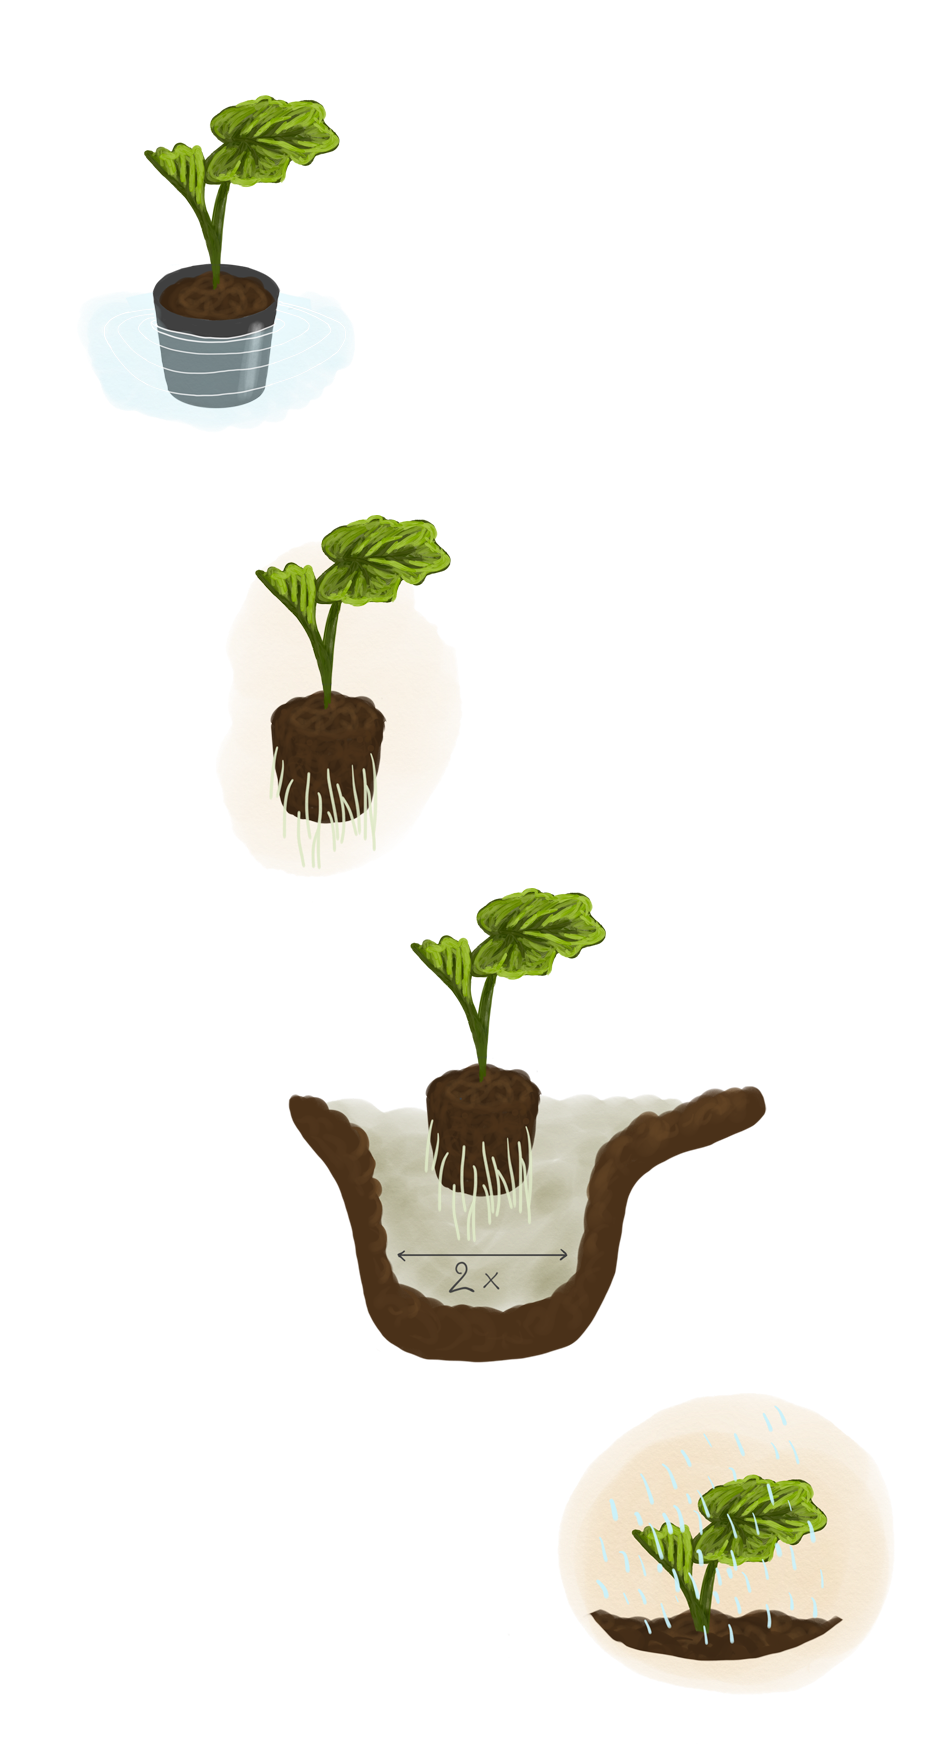 Planter un arbuste en conteneur : réussir la plantation